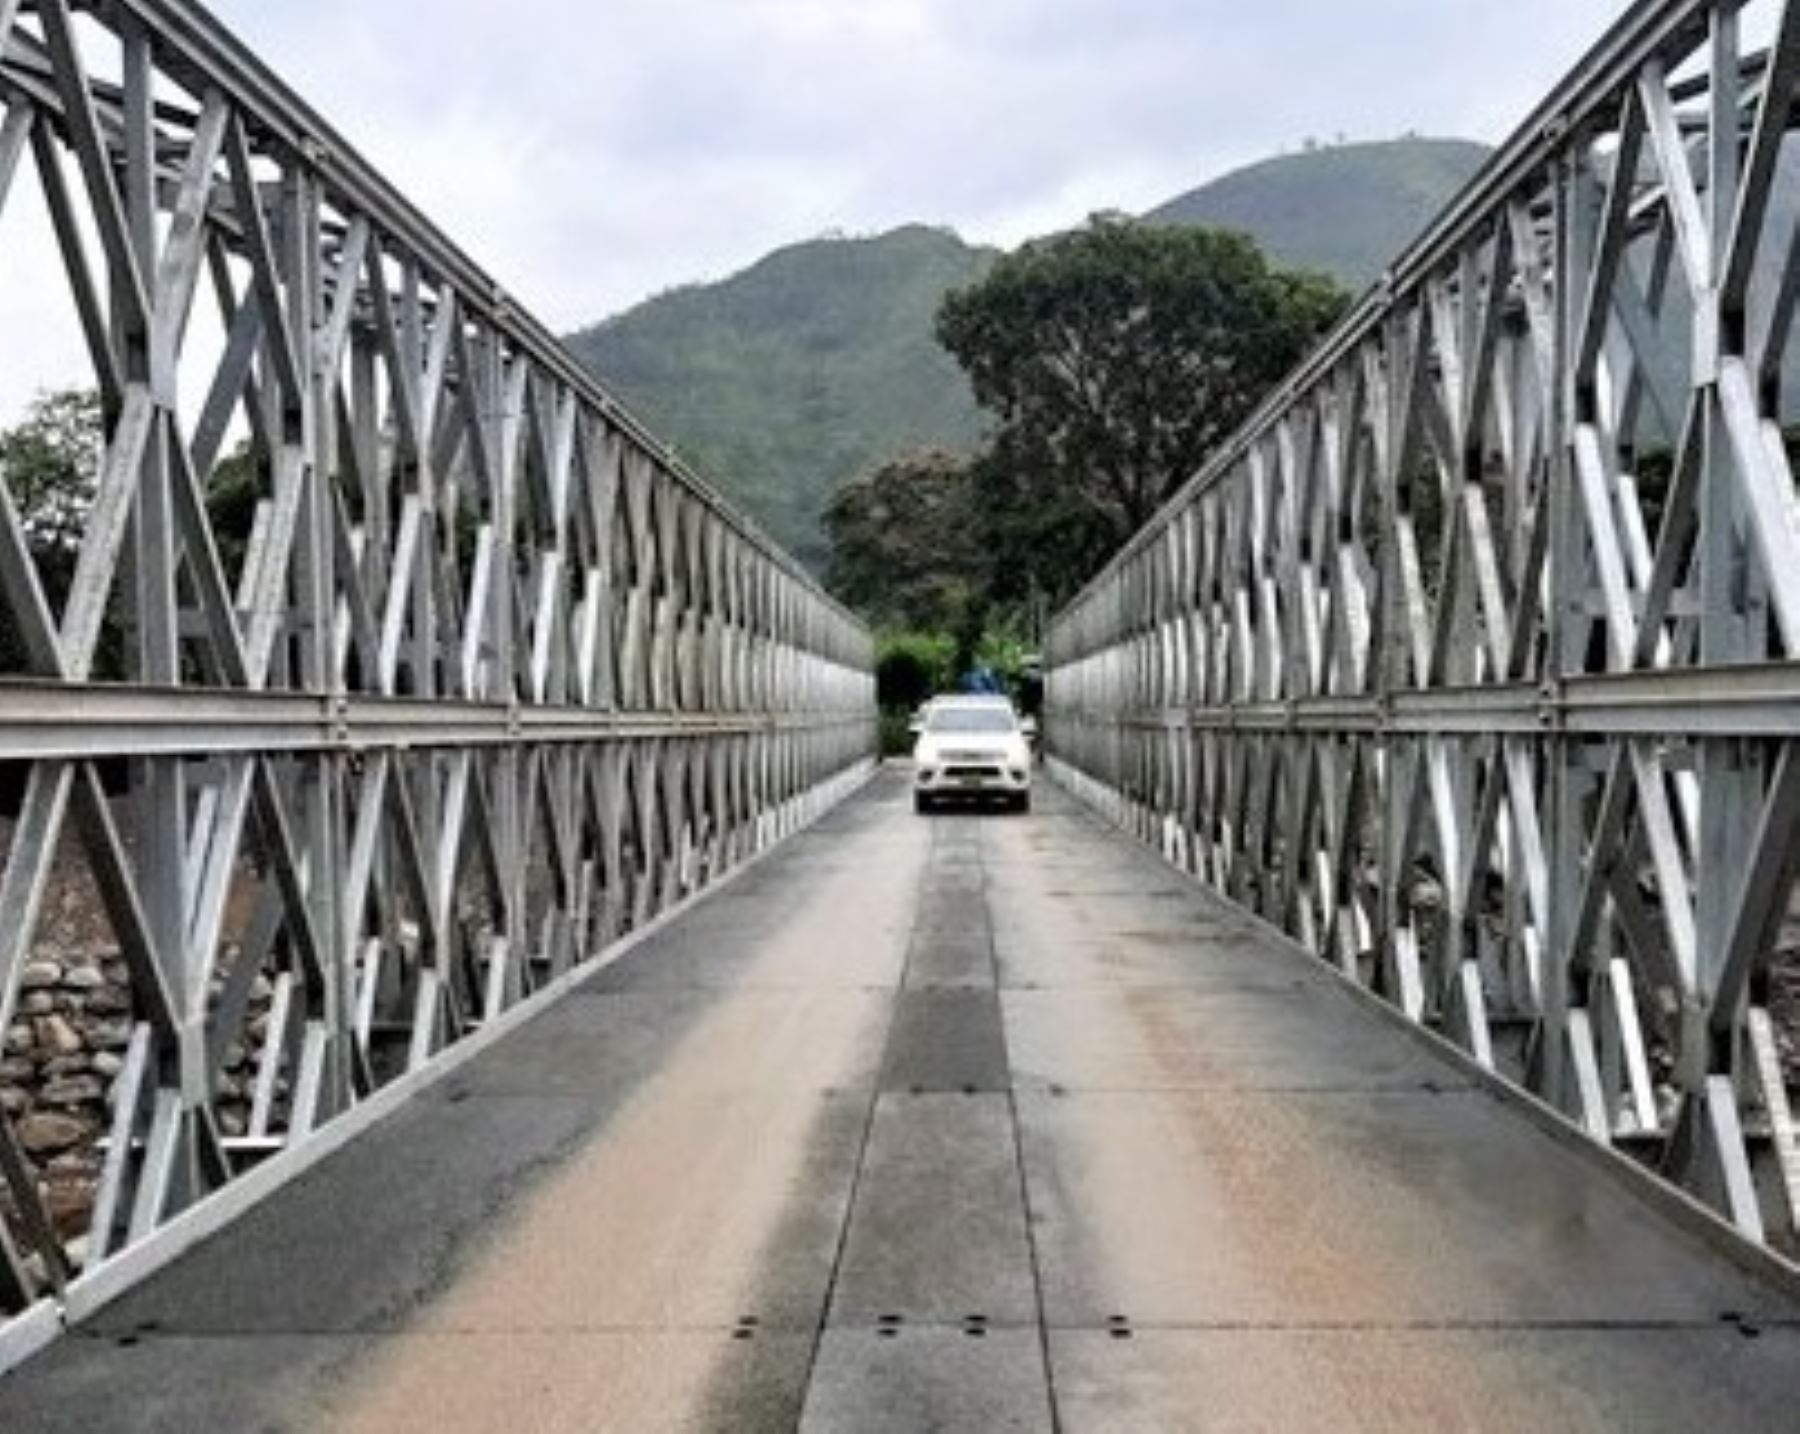 El MTC puso en funcionamiento un puente modular en el sector Pan de Azúcar, ubicado en la provincia de La Convención, en Cusco, que resultó afectado por un huaico.